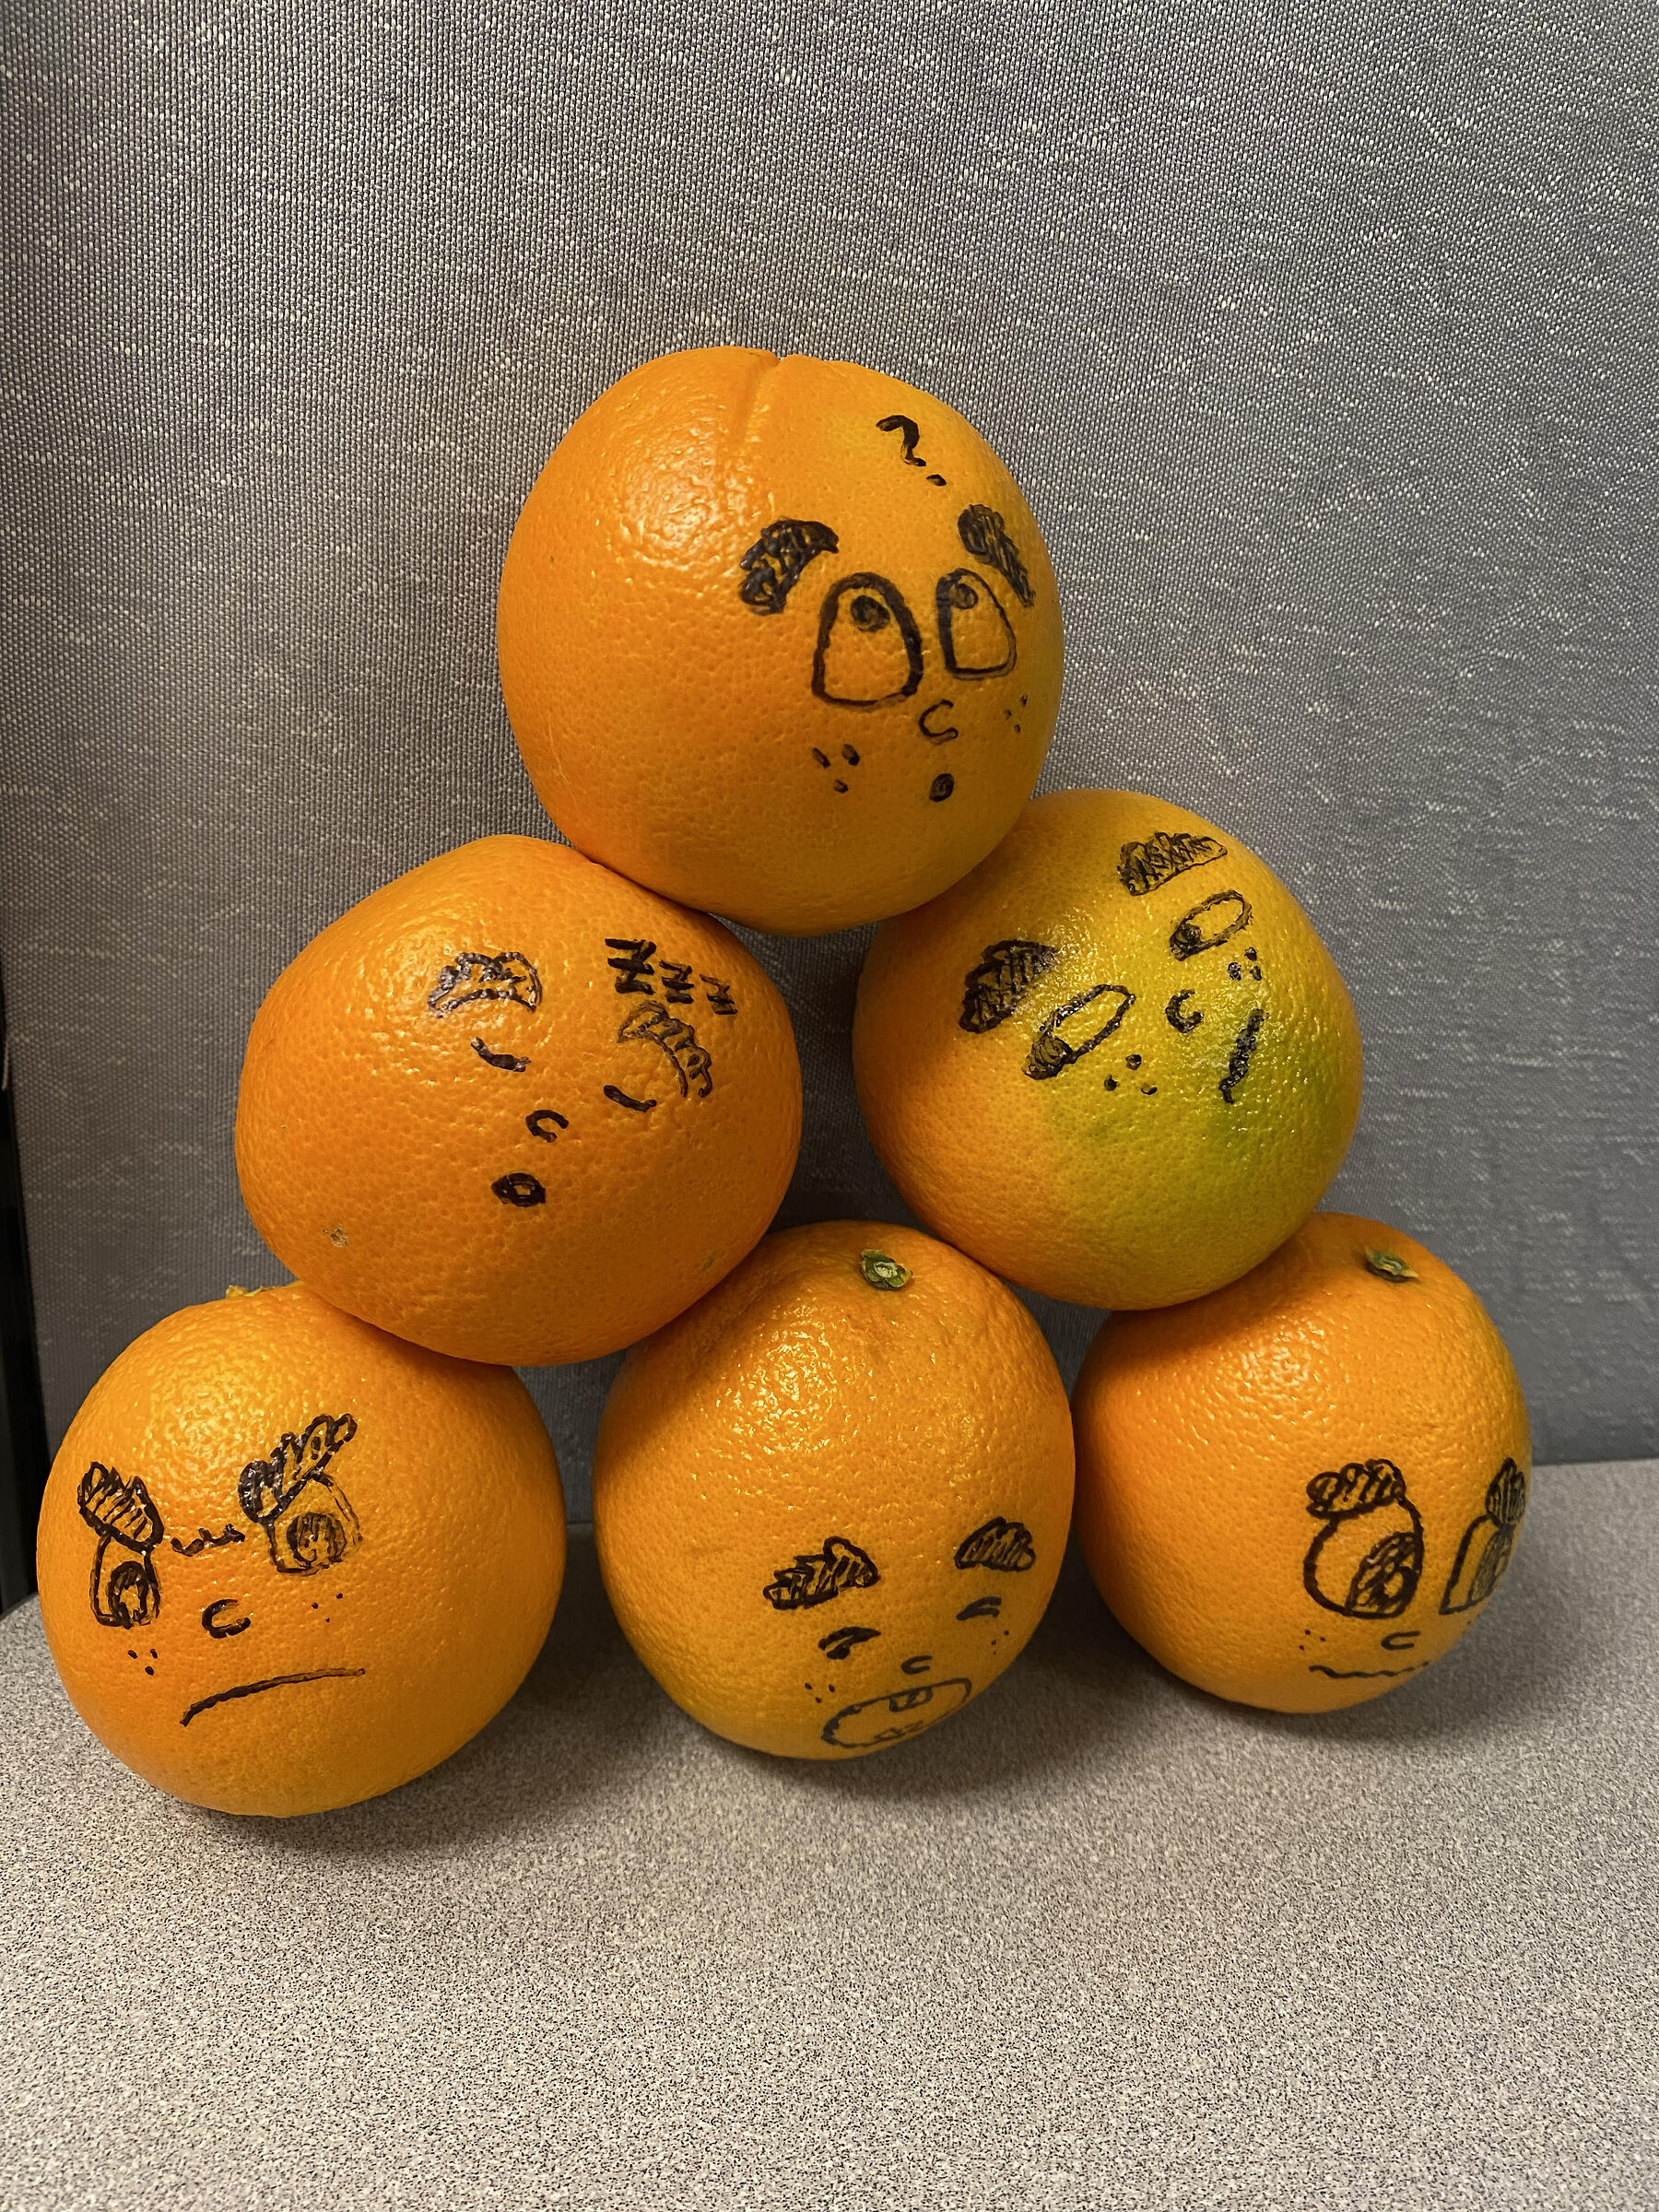 A pile of oranges...